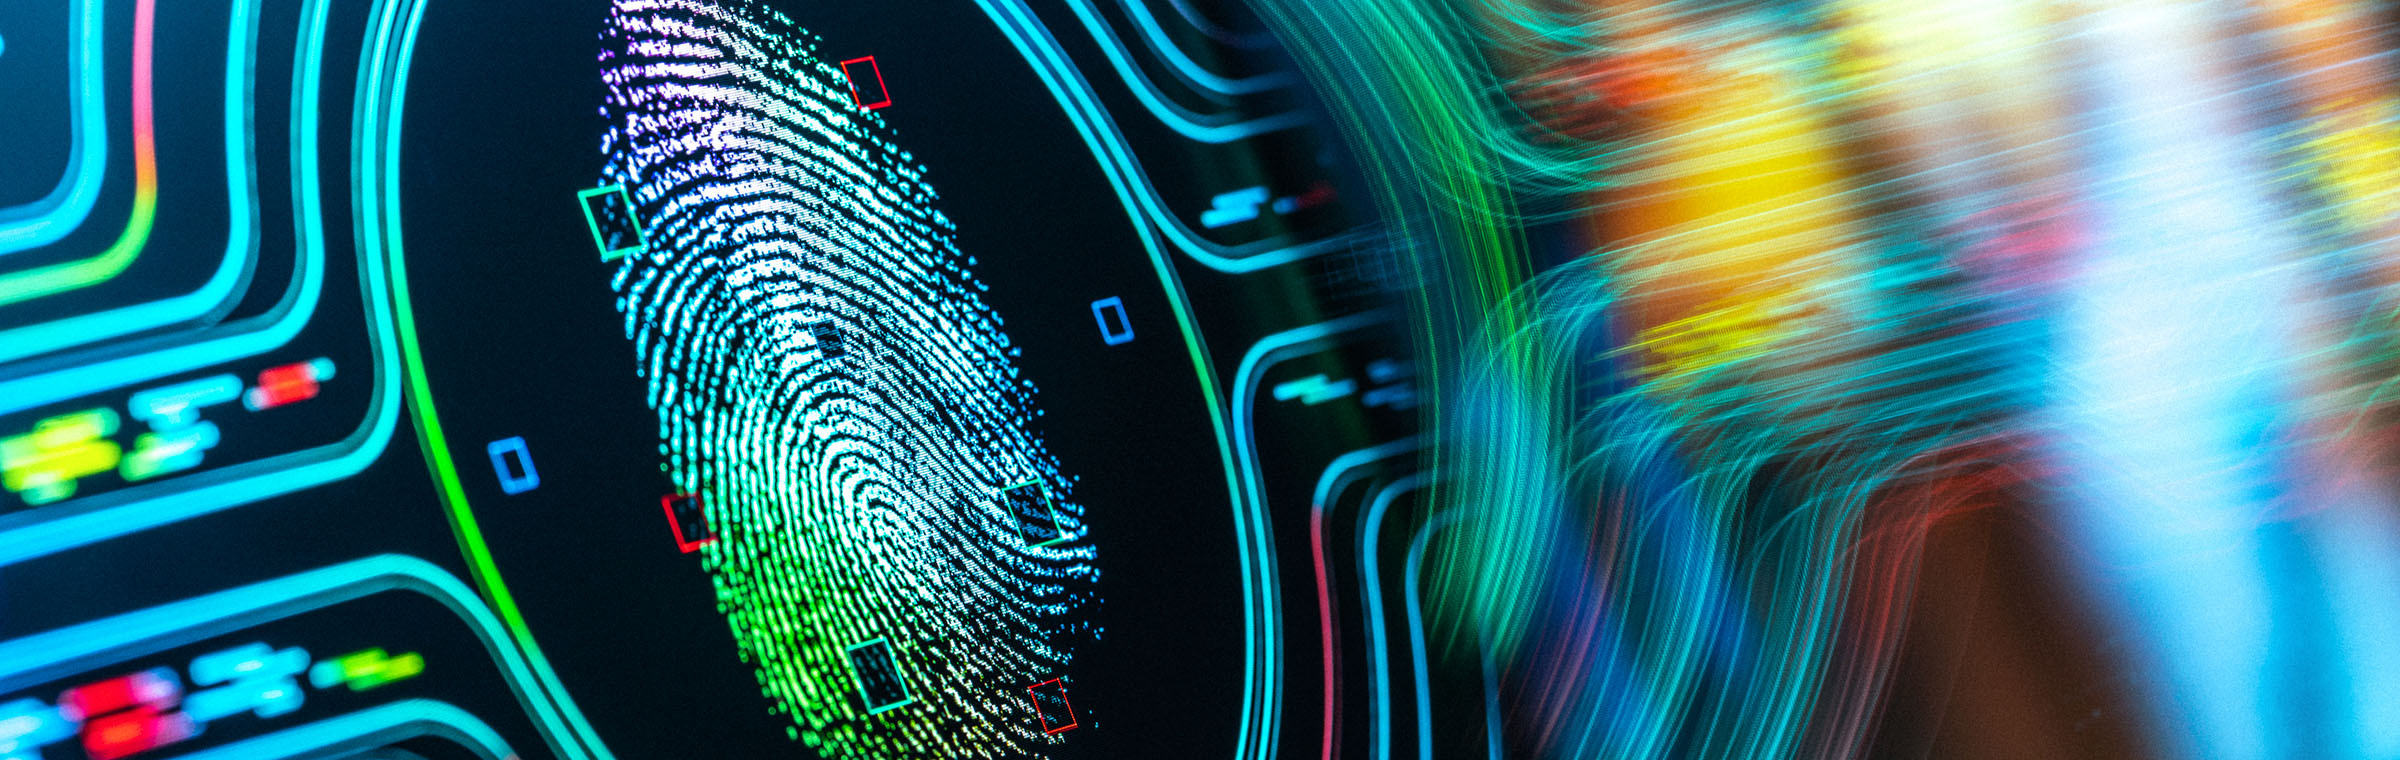 Fingerprint Authentication Button. Biometric Security Background